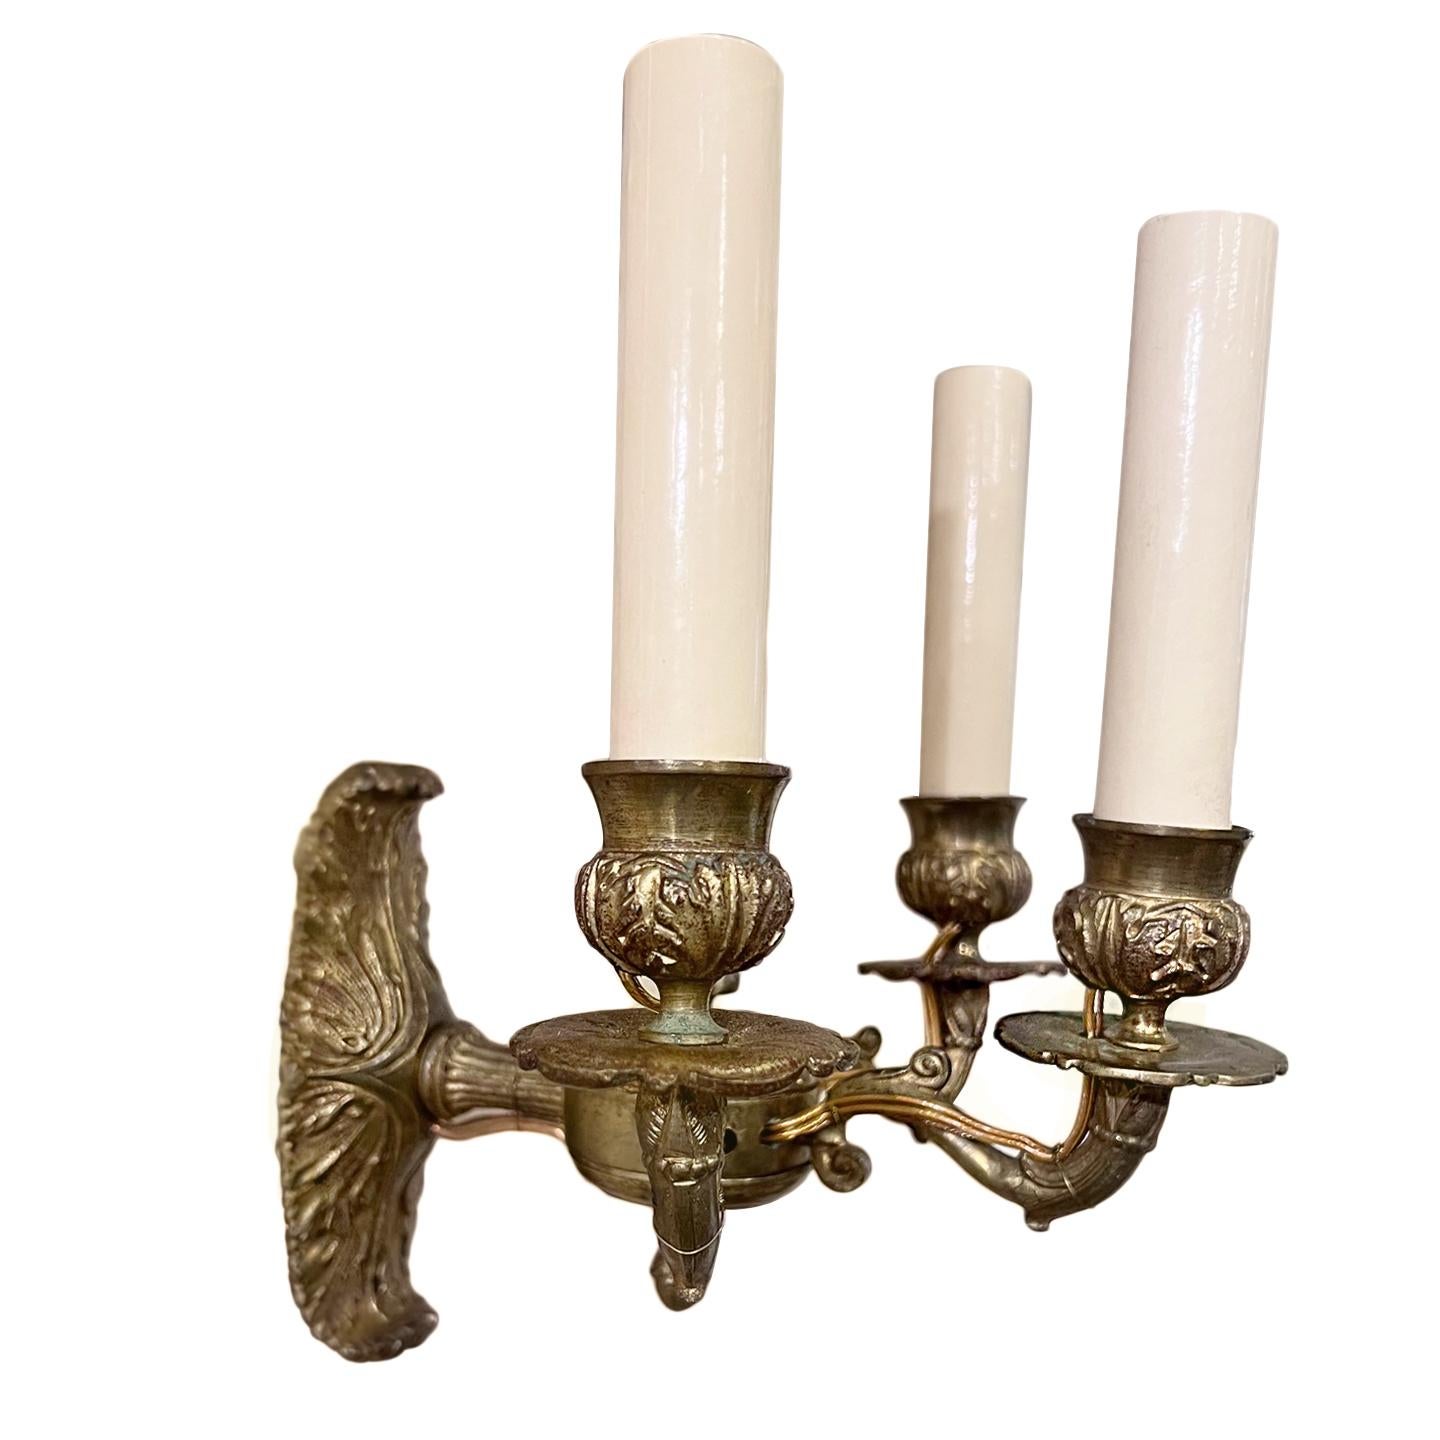 Paar französische 3-Licht-Leuchten im Empire-Stil aus dem 19. Jahrhundert mit Originallackierung. 

Abmessungen:
Höhe: 9,5